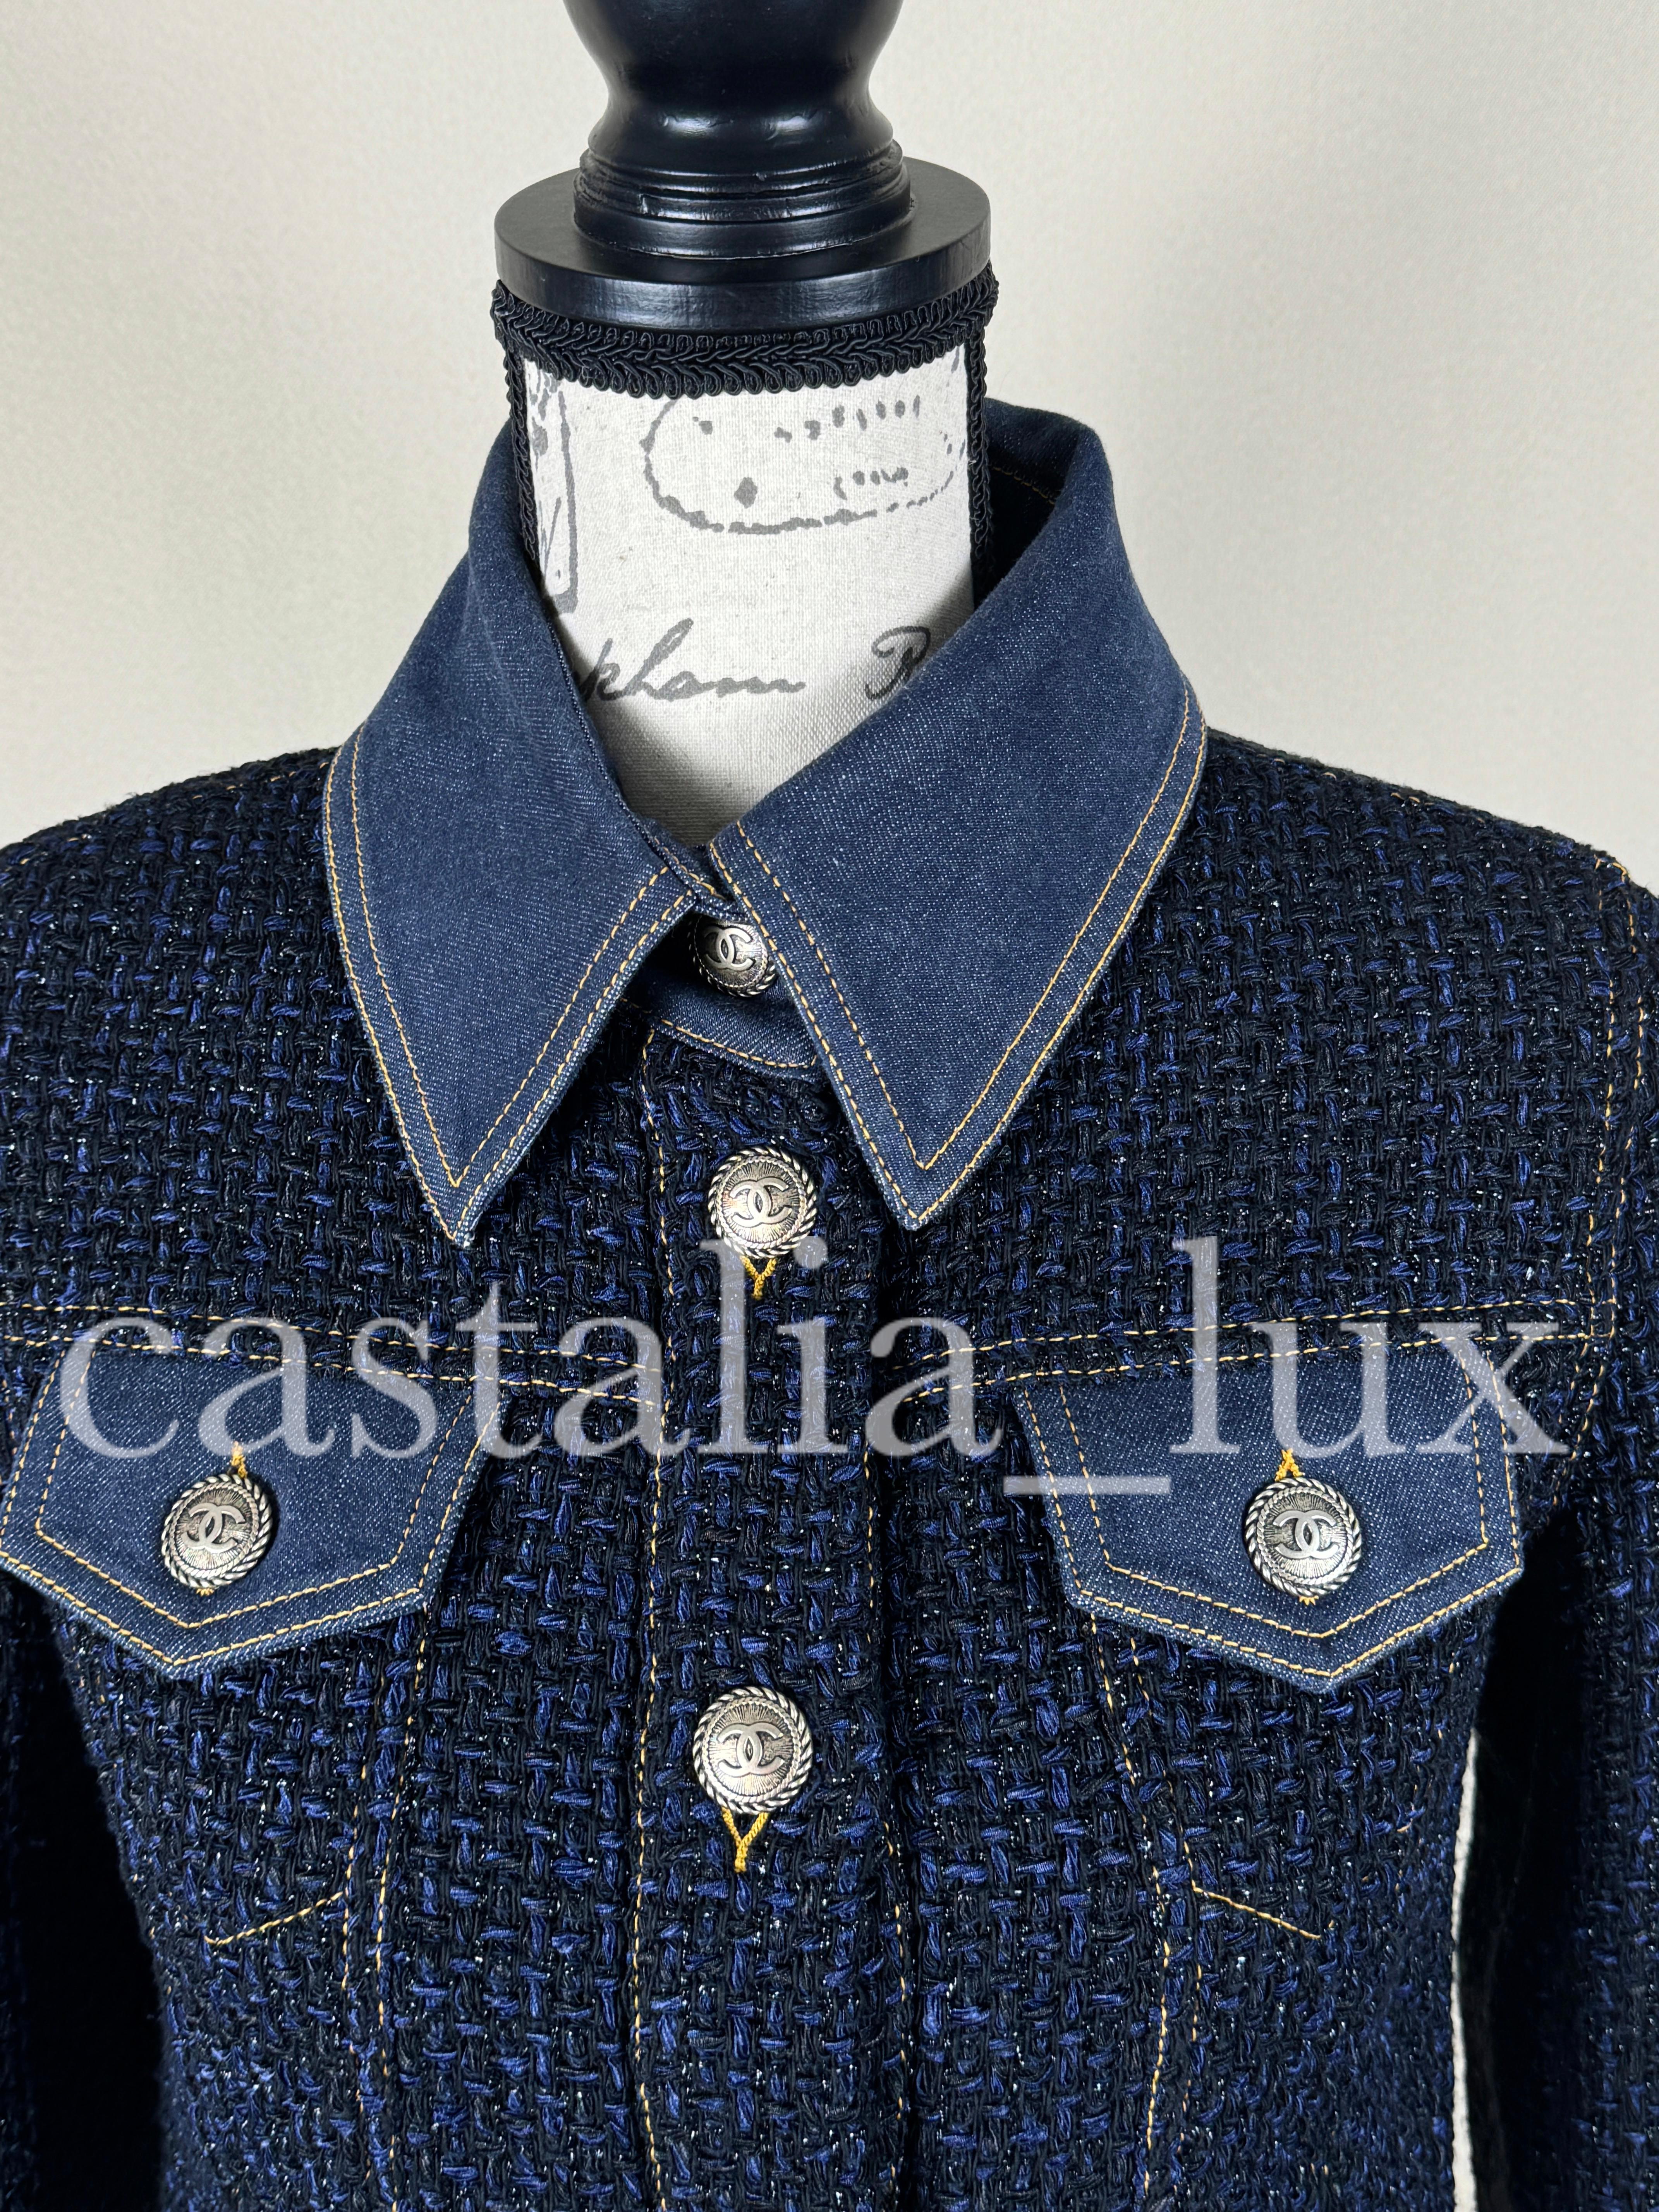 Chanel New Bestseller Lesage Tweed Jacket For Sale 12